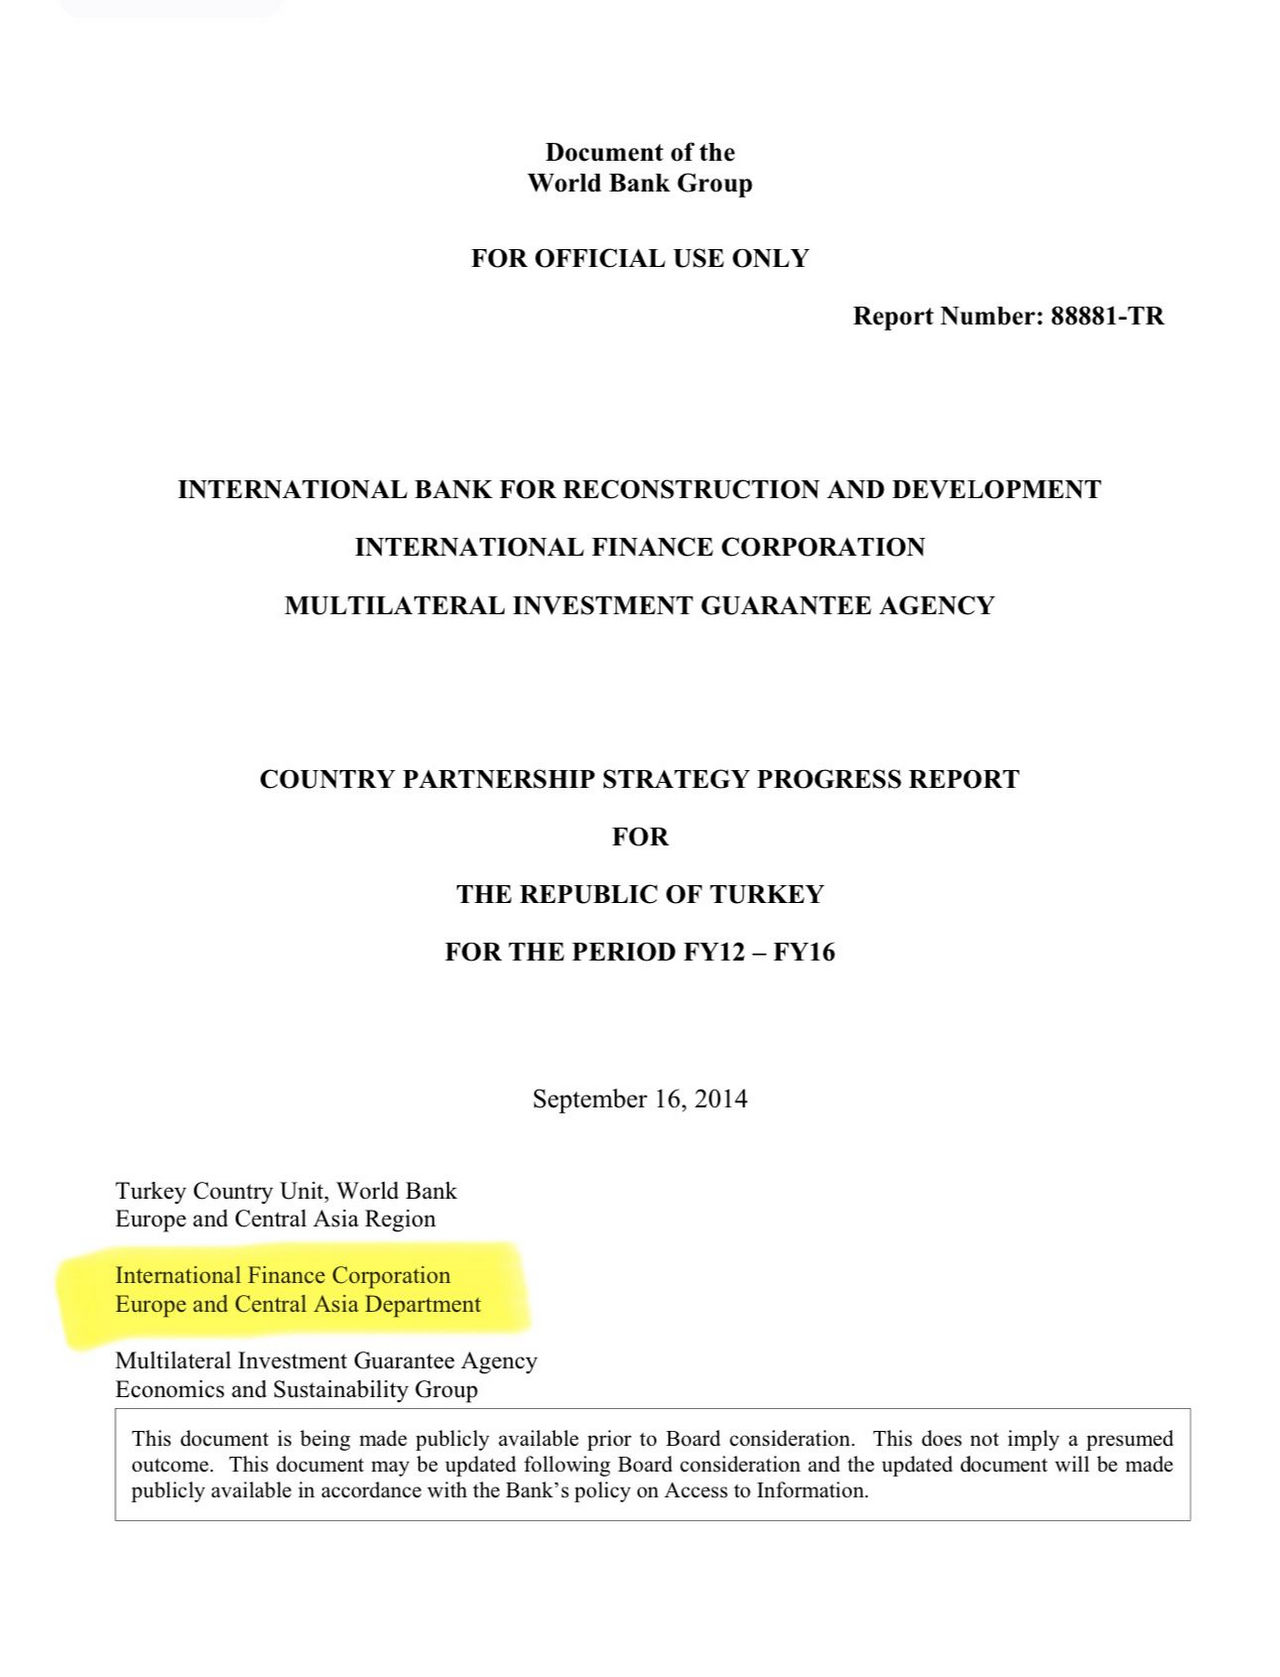 2012-16 dönemi İşbirliği Çerçeve Programı Sözleşmesinde Uluslararası Finans Kurumunun sözleşme tarafının"Avrupa ve Merkez Asya Departmanı"ydı. 